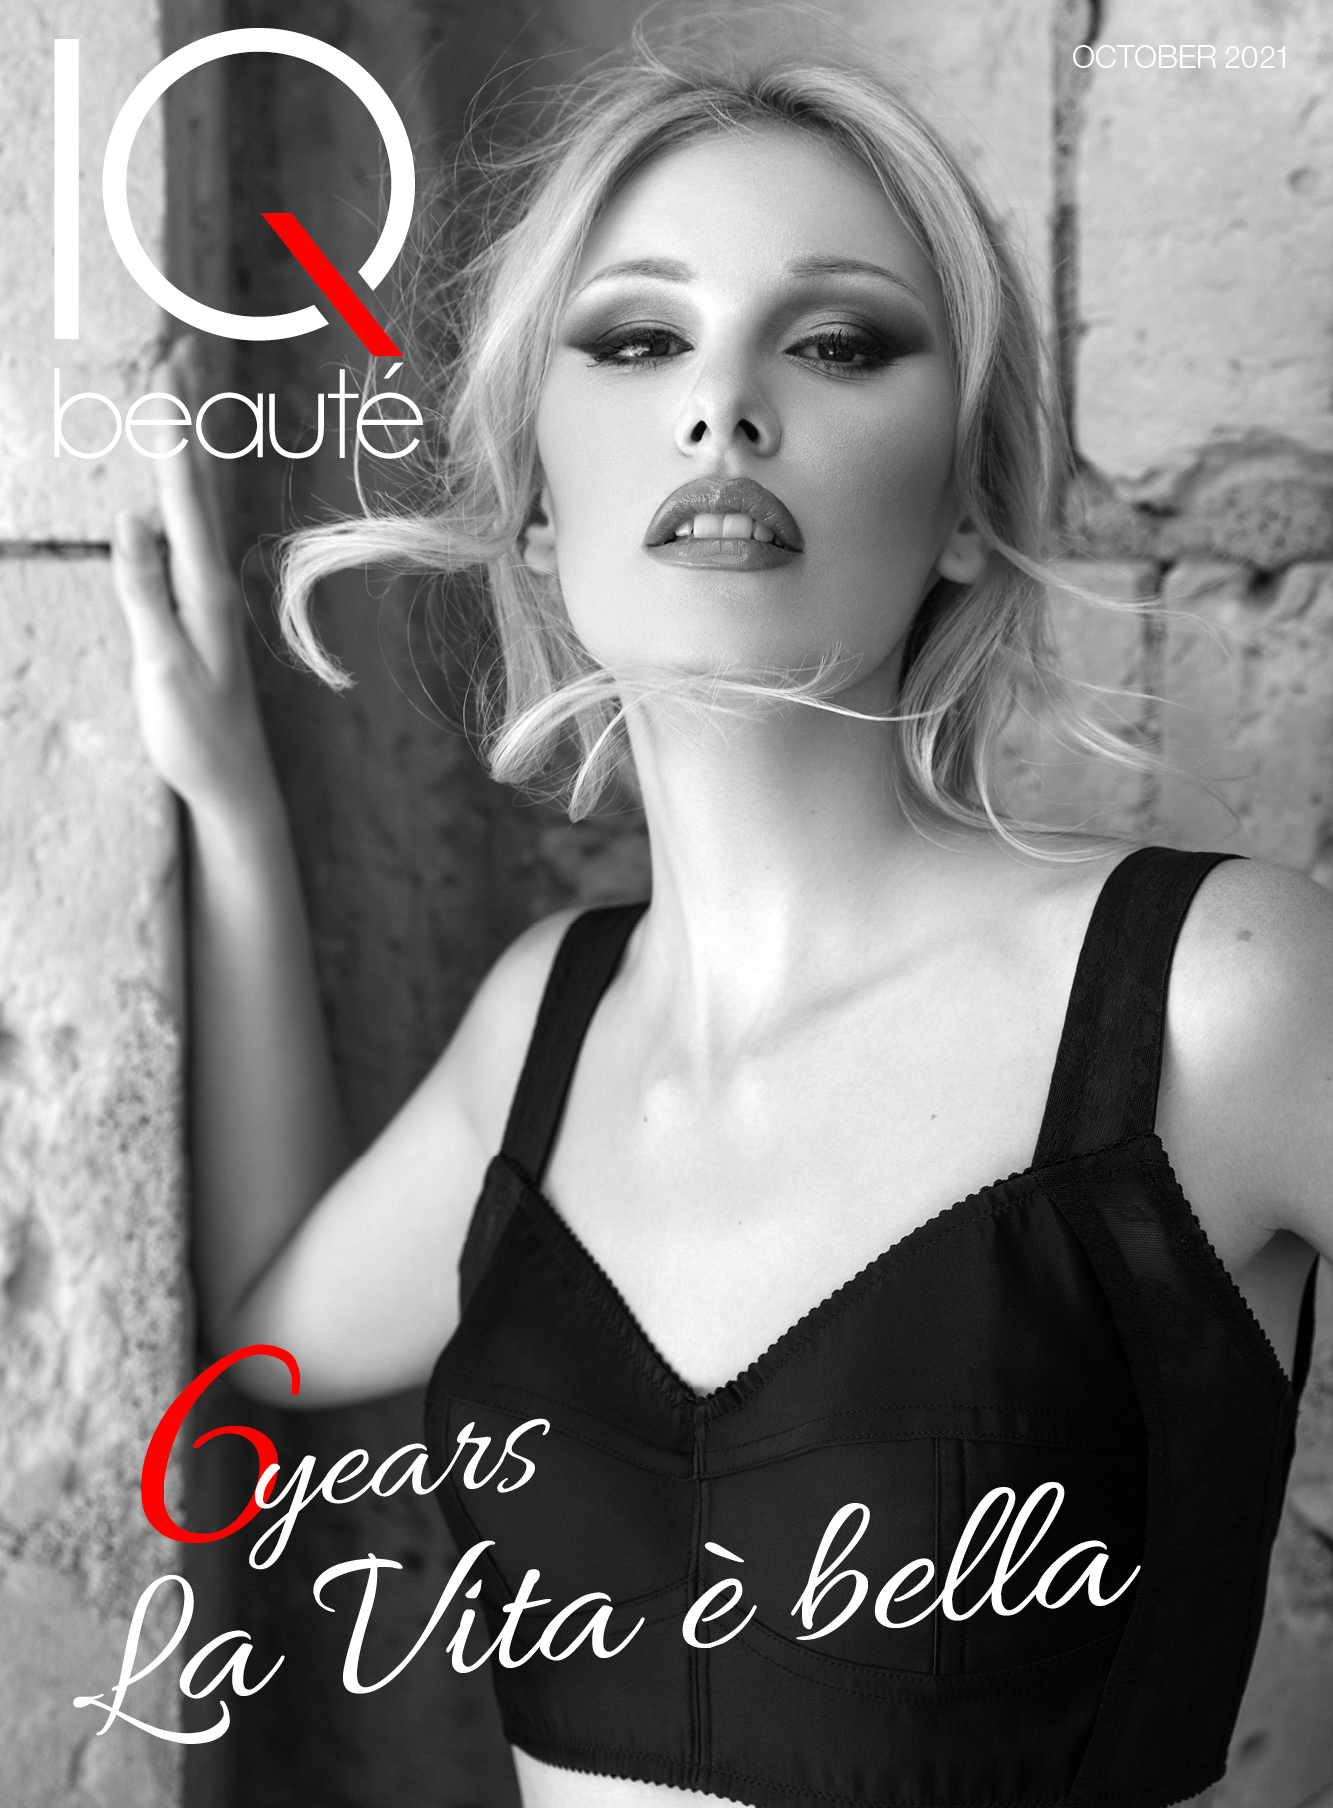 IQ BEAU OCT21 COVER